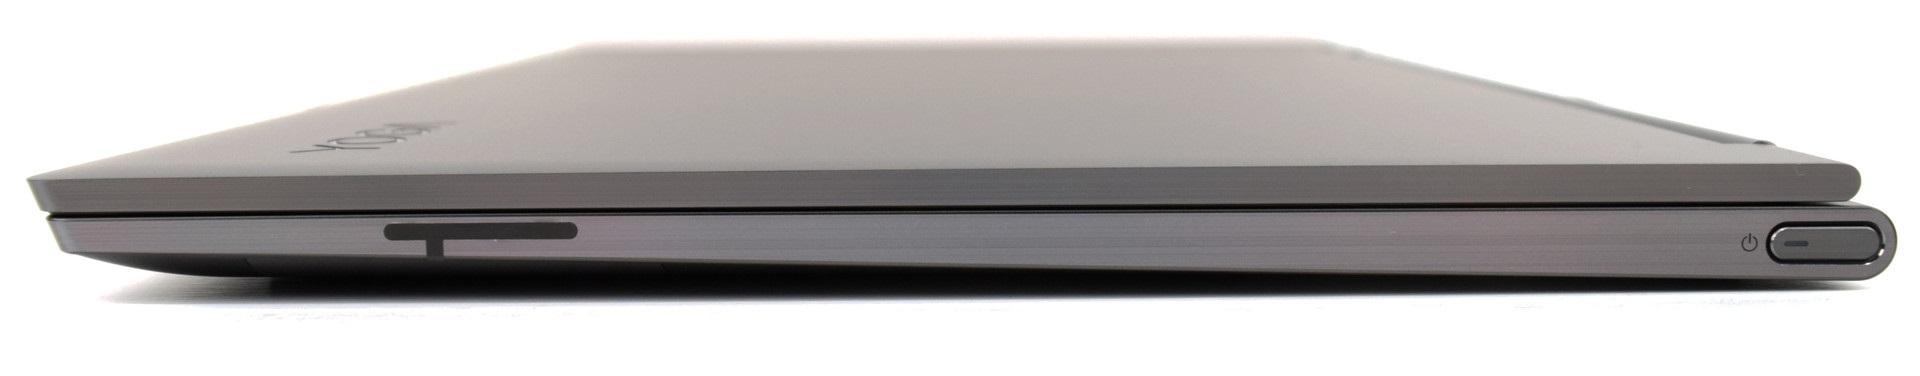 Đánh giá Lenovo Yoga C930-13IKB: Cao cấp, âm thanh ấn tượng !, trang tư vấn laptop